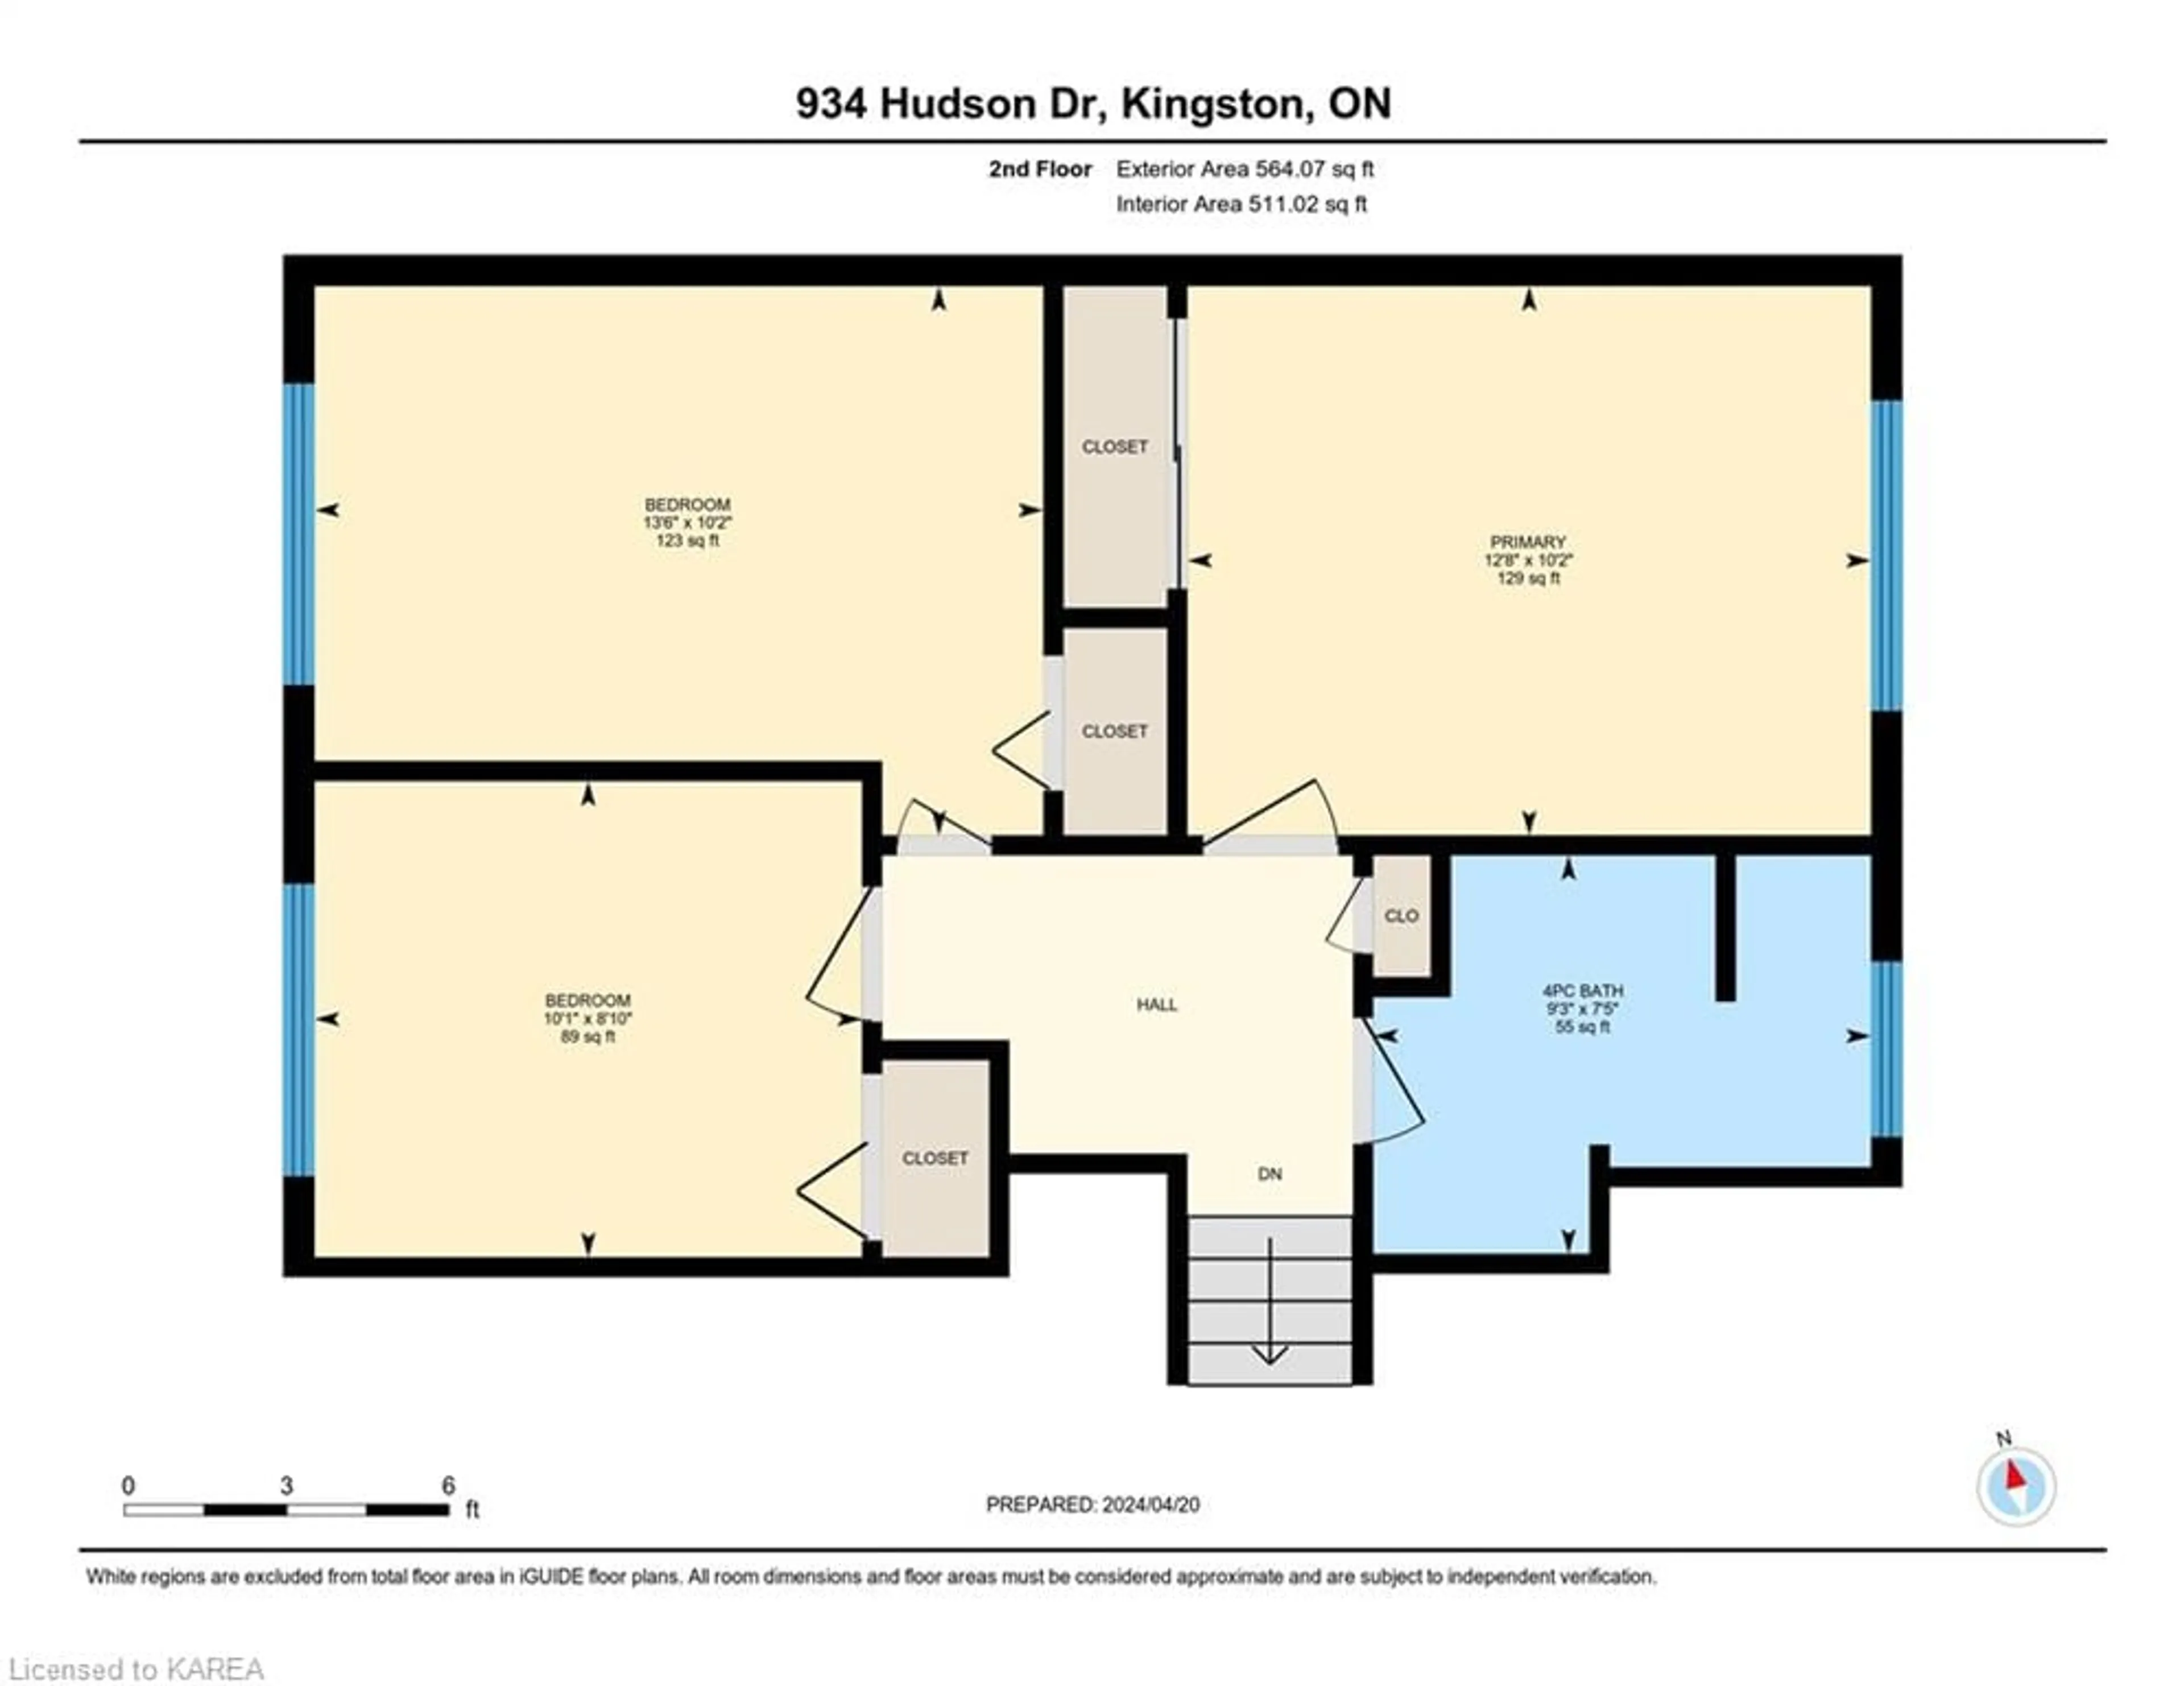 Floor plan for 934 Hudson Dr, Kingston Ontario K7M 5K6